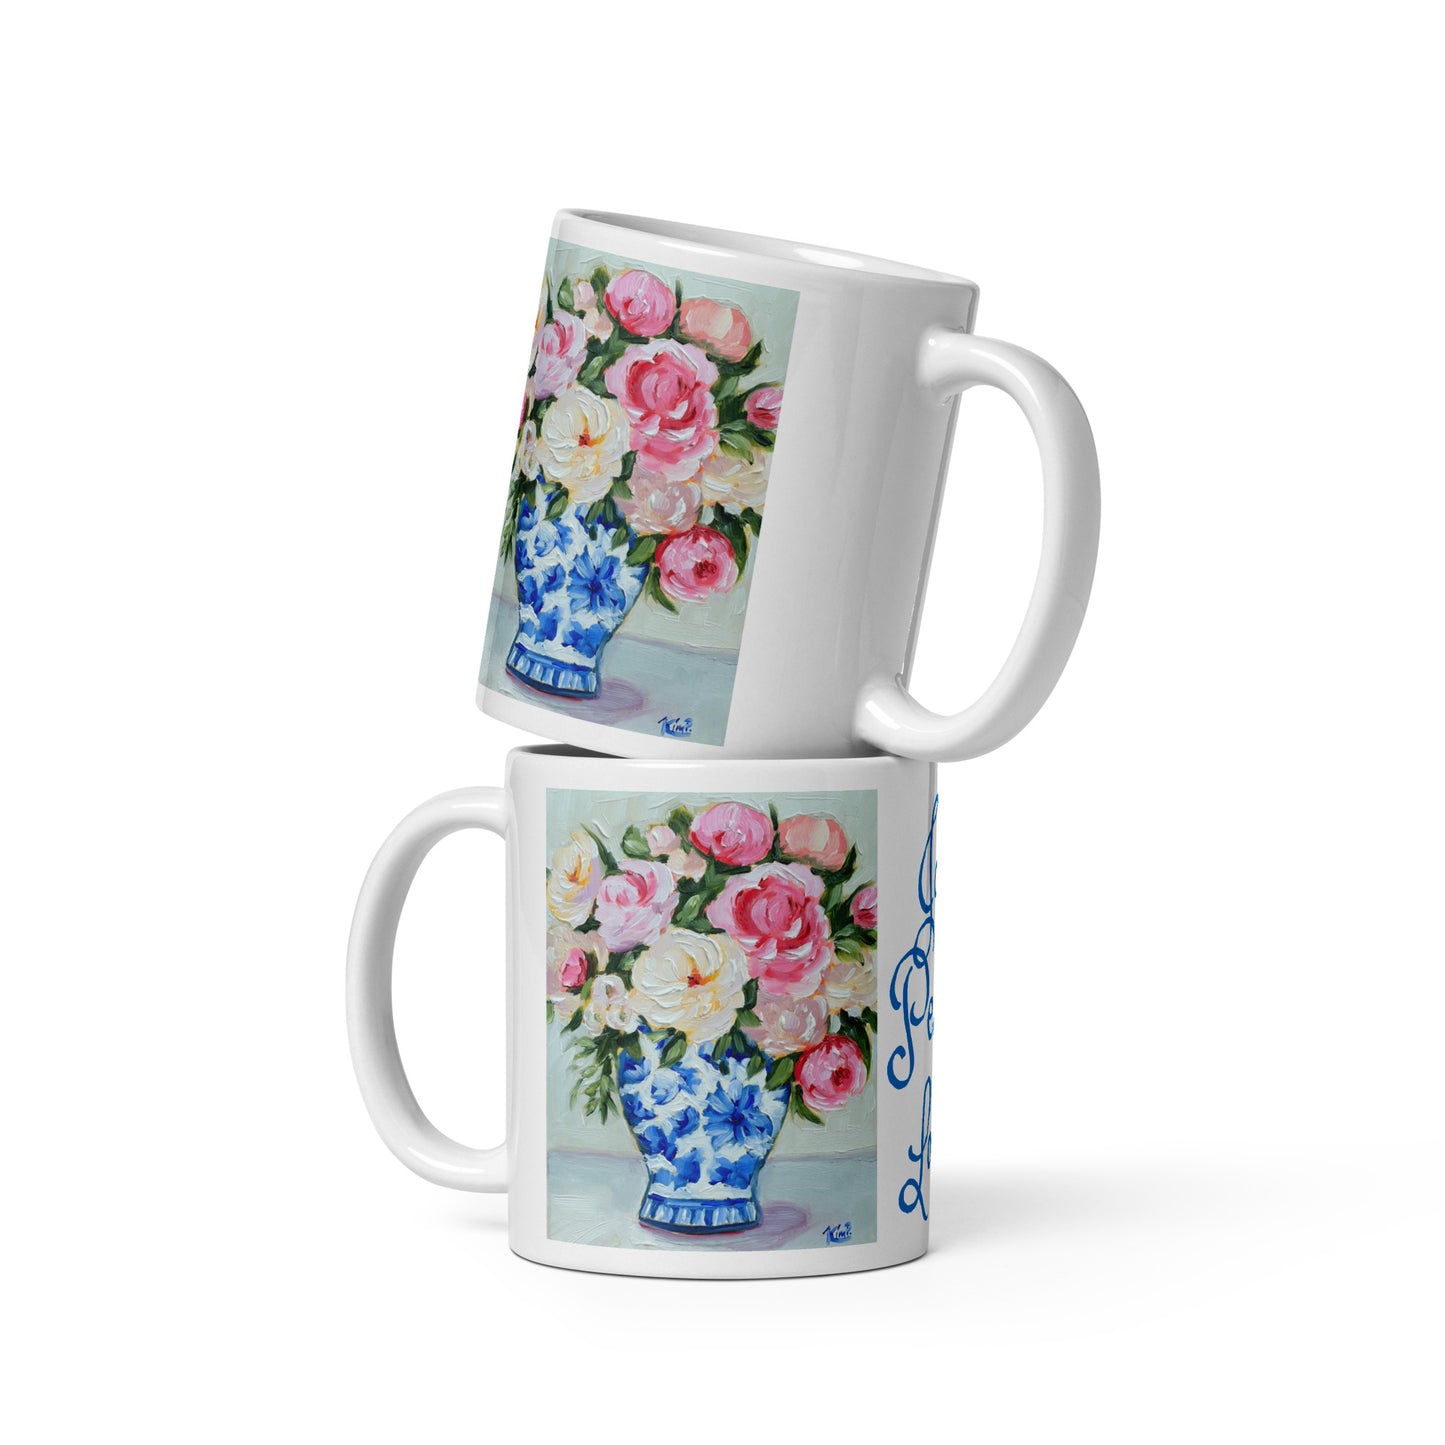 Blue & White Vase with Roses Joy, Peace, Love Mug